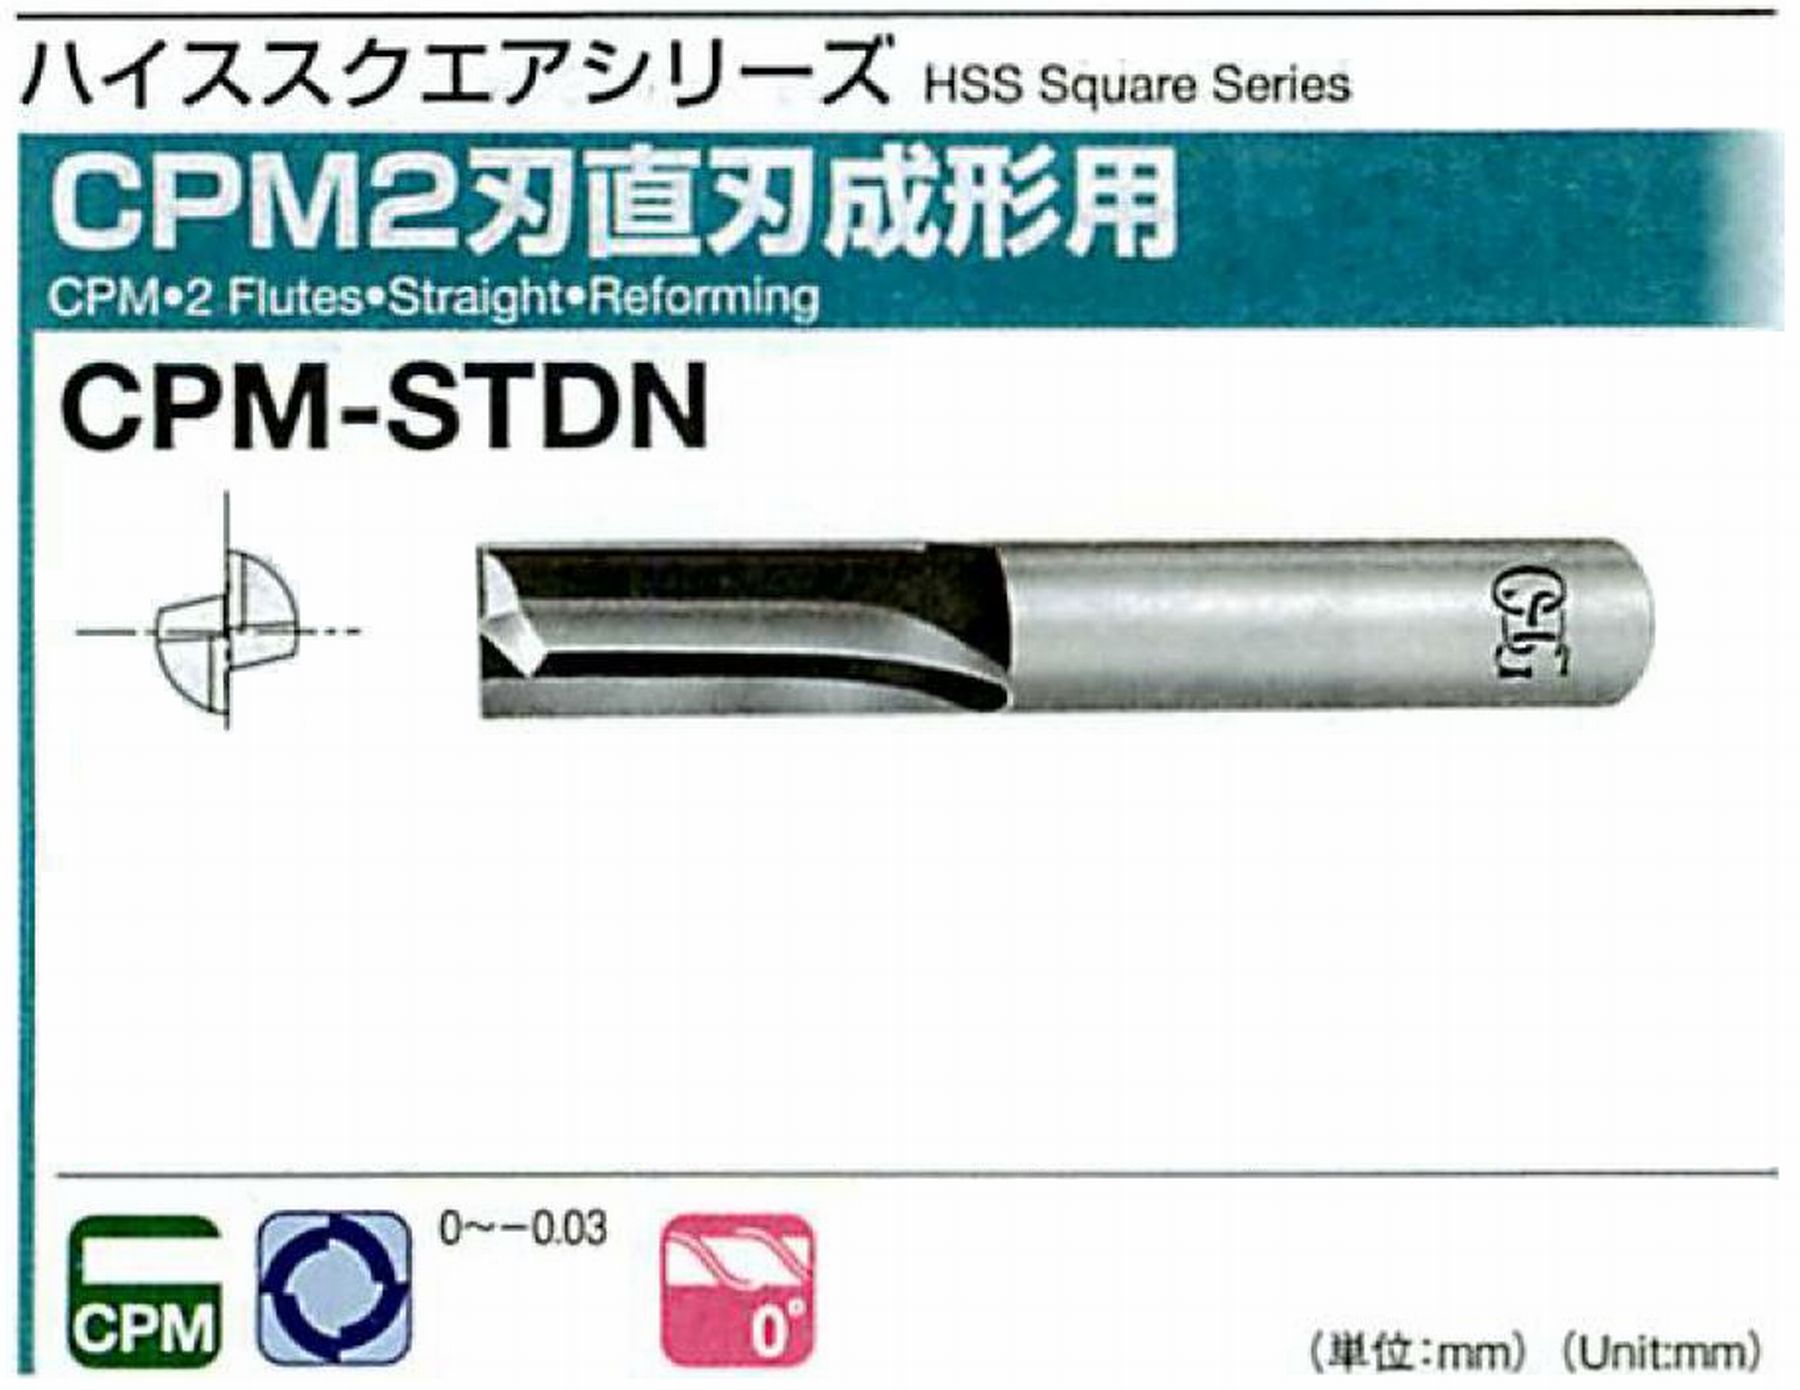 オーエスジー/OSG CPM2刃 直刃成形用 CPM-STDN 外径19 全長110 刃長45 シャンク径20mm